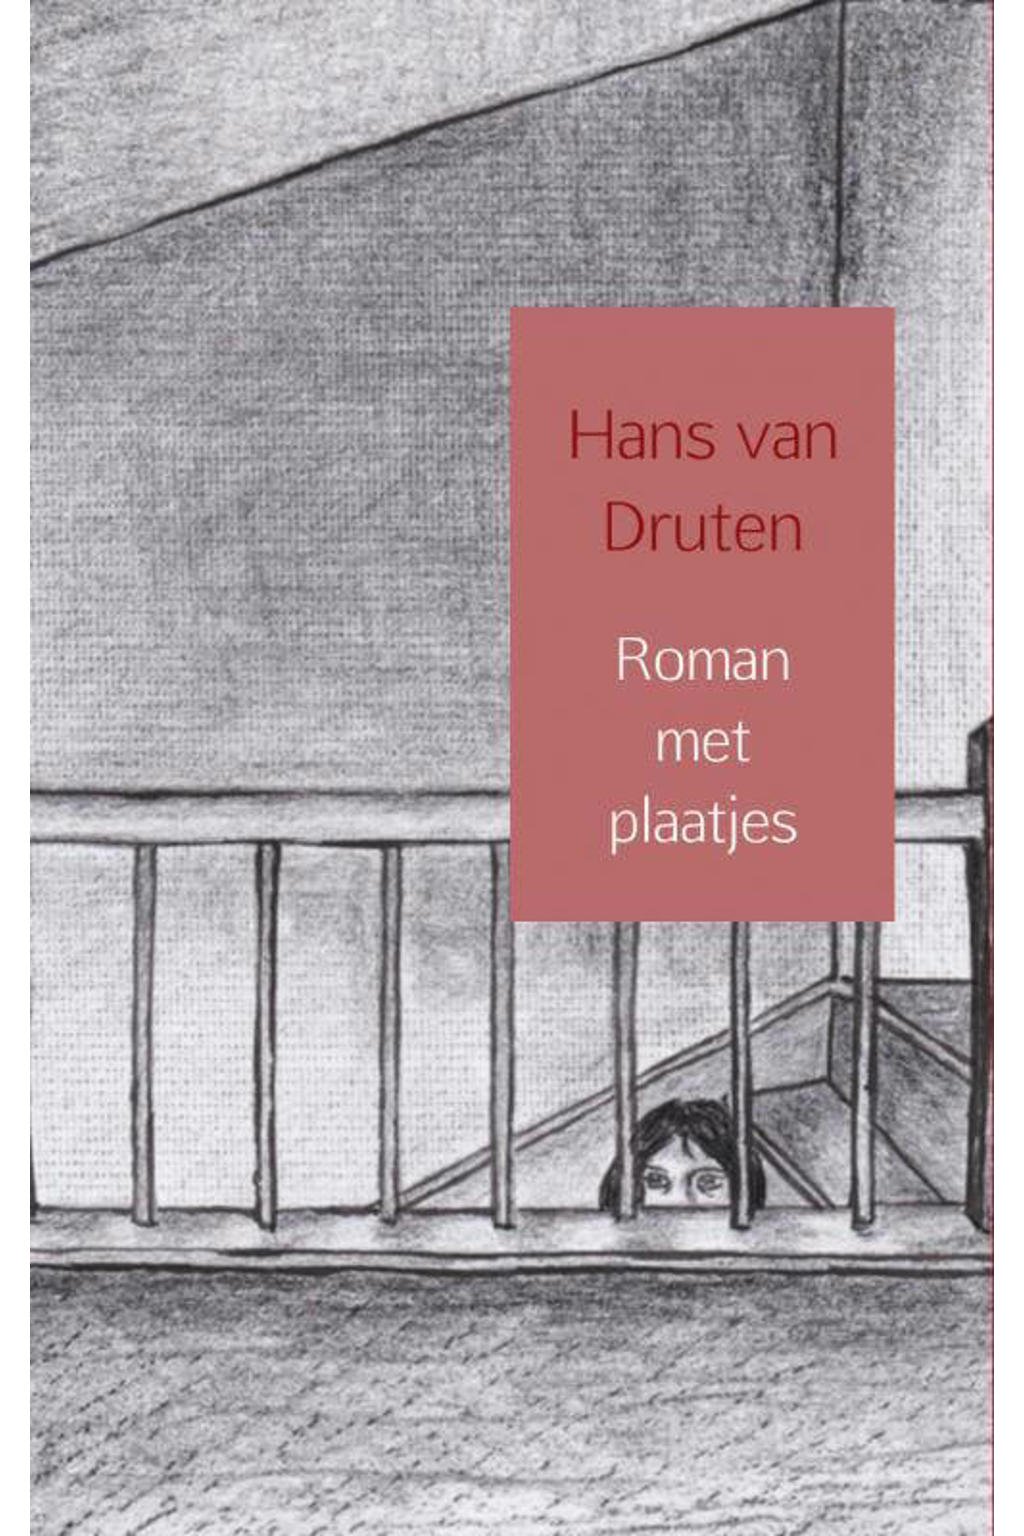 Roman met plaatjes - Hans van Druten